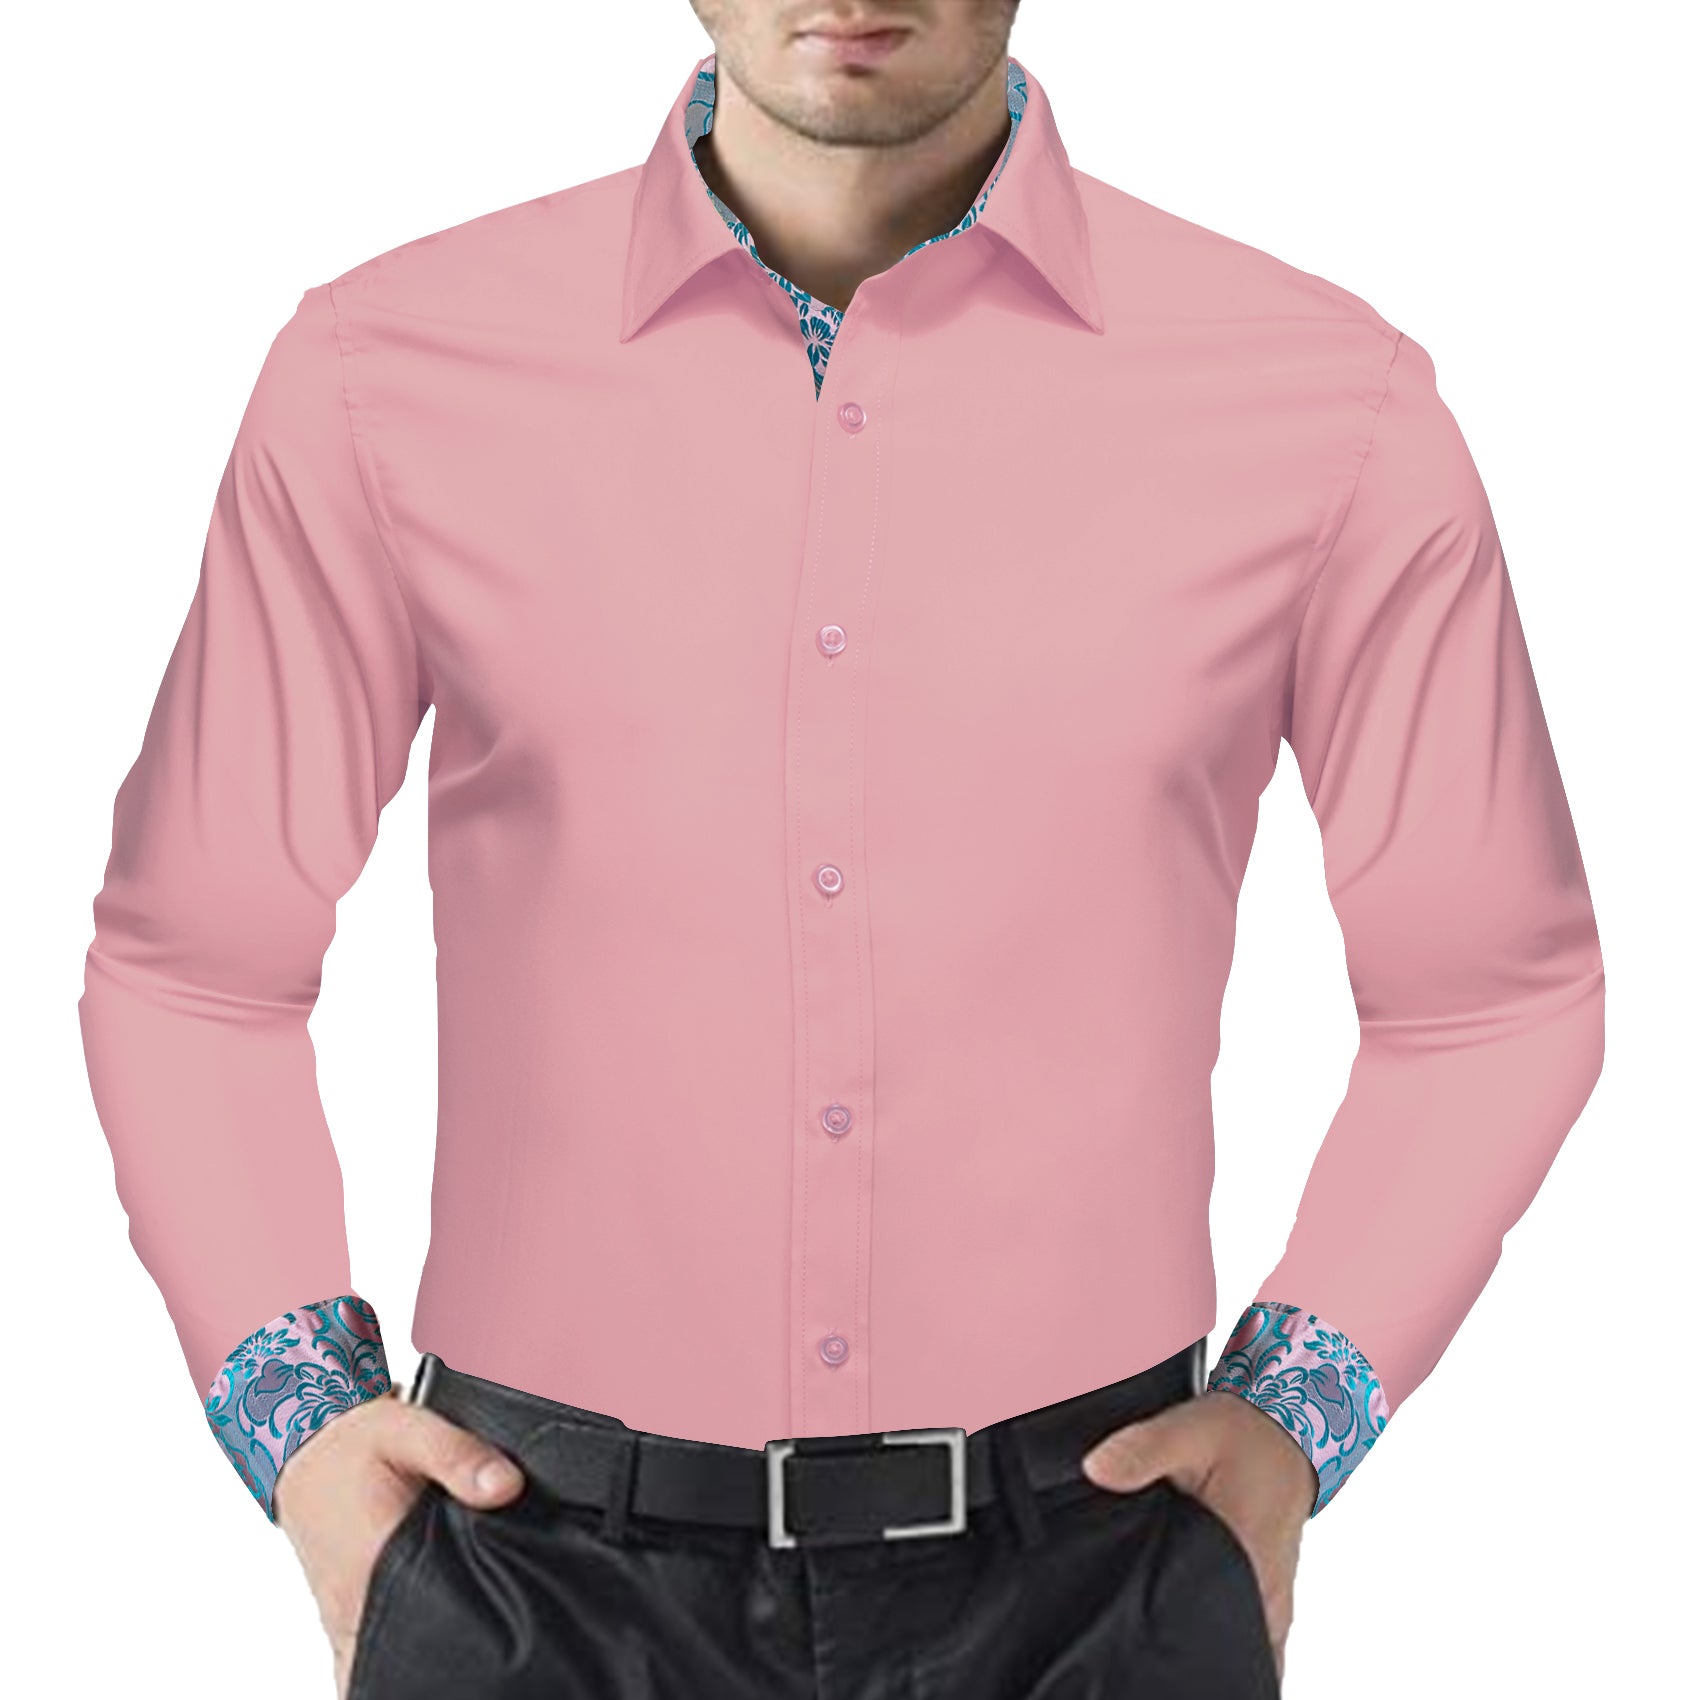 Barry.wang Formal Pink Blue Splicing Men's Business Shirt